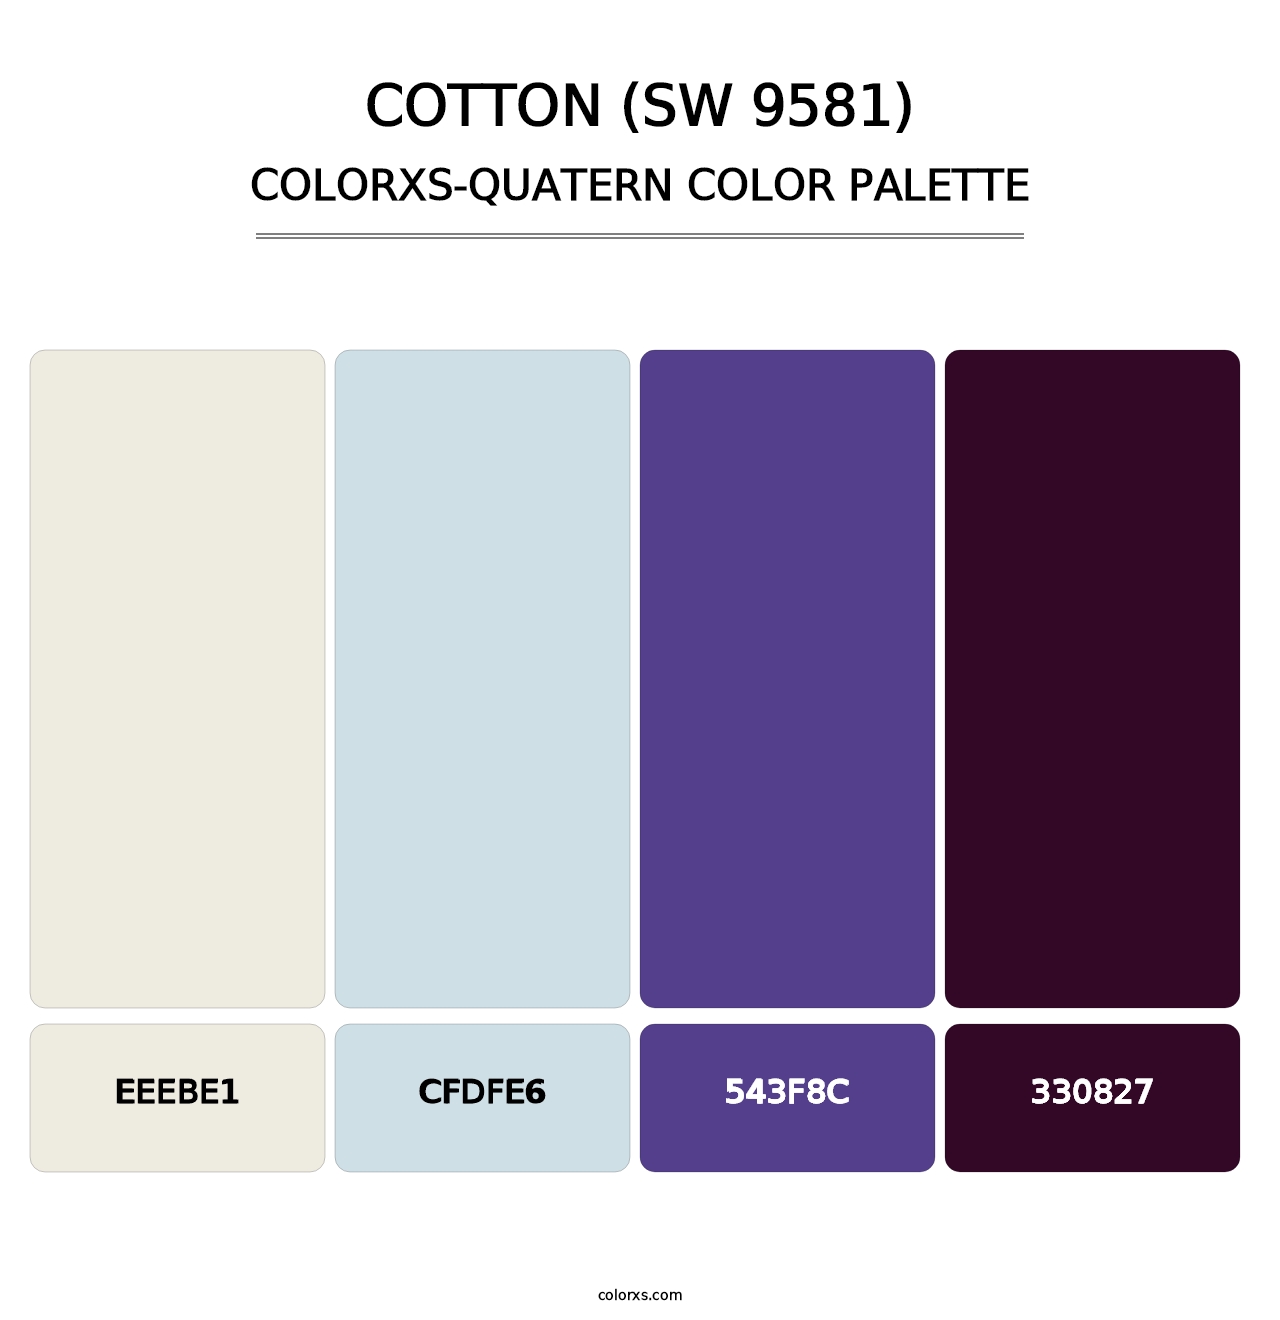 Cotton (SW 9581) - Colorxs Quatern Palette